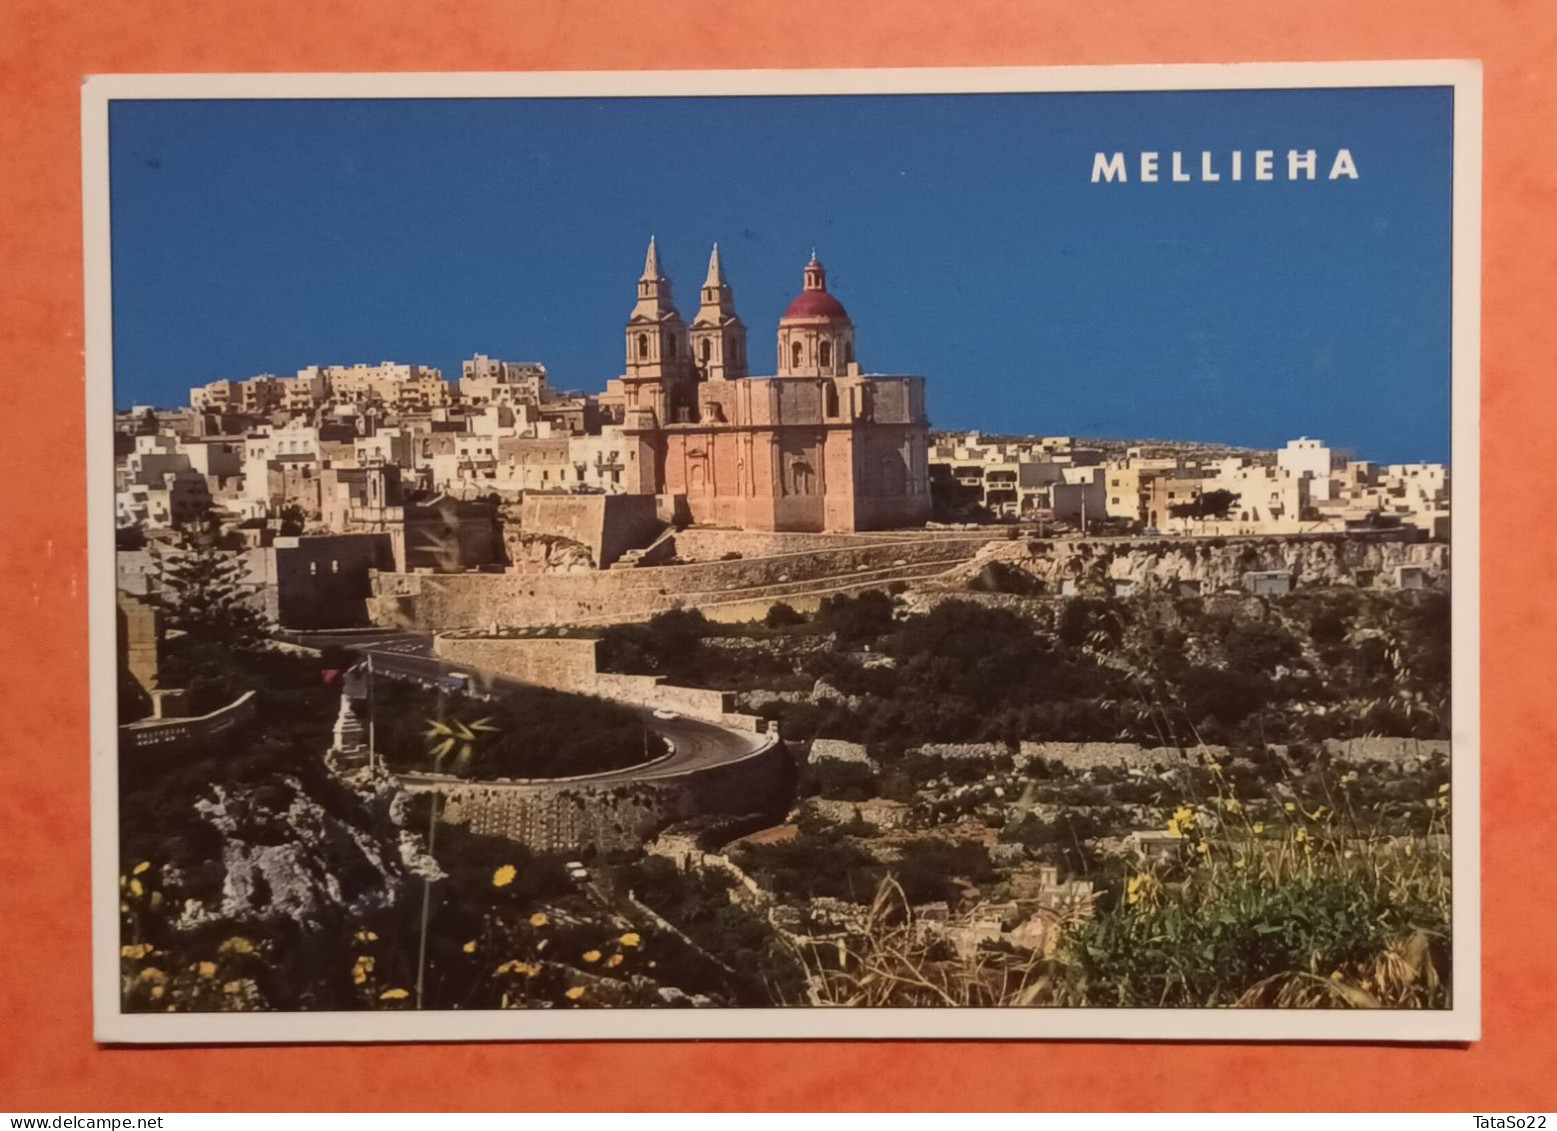 Mellieha - Malte - Malta